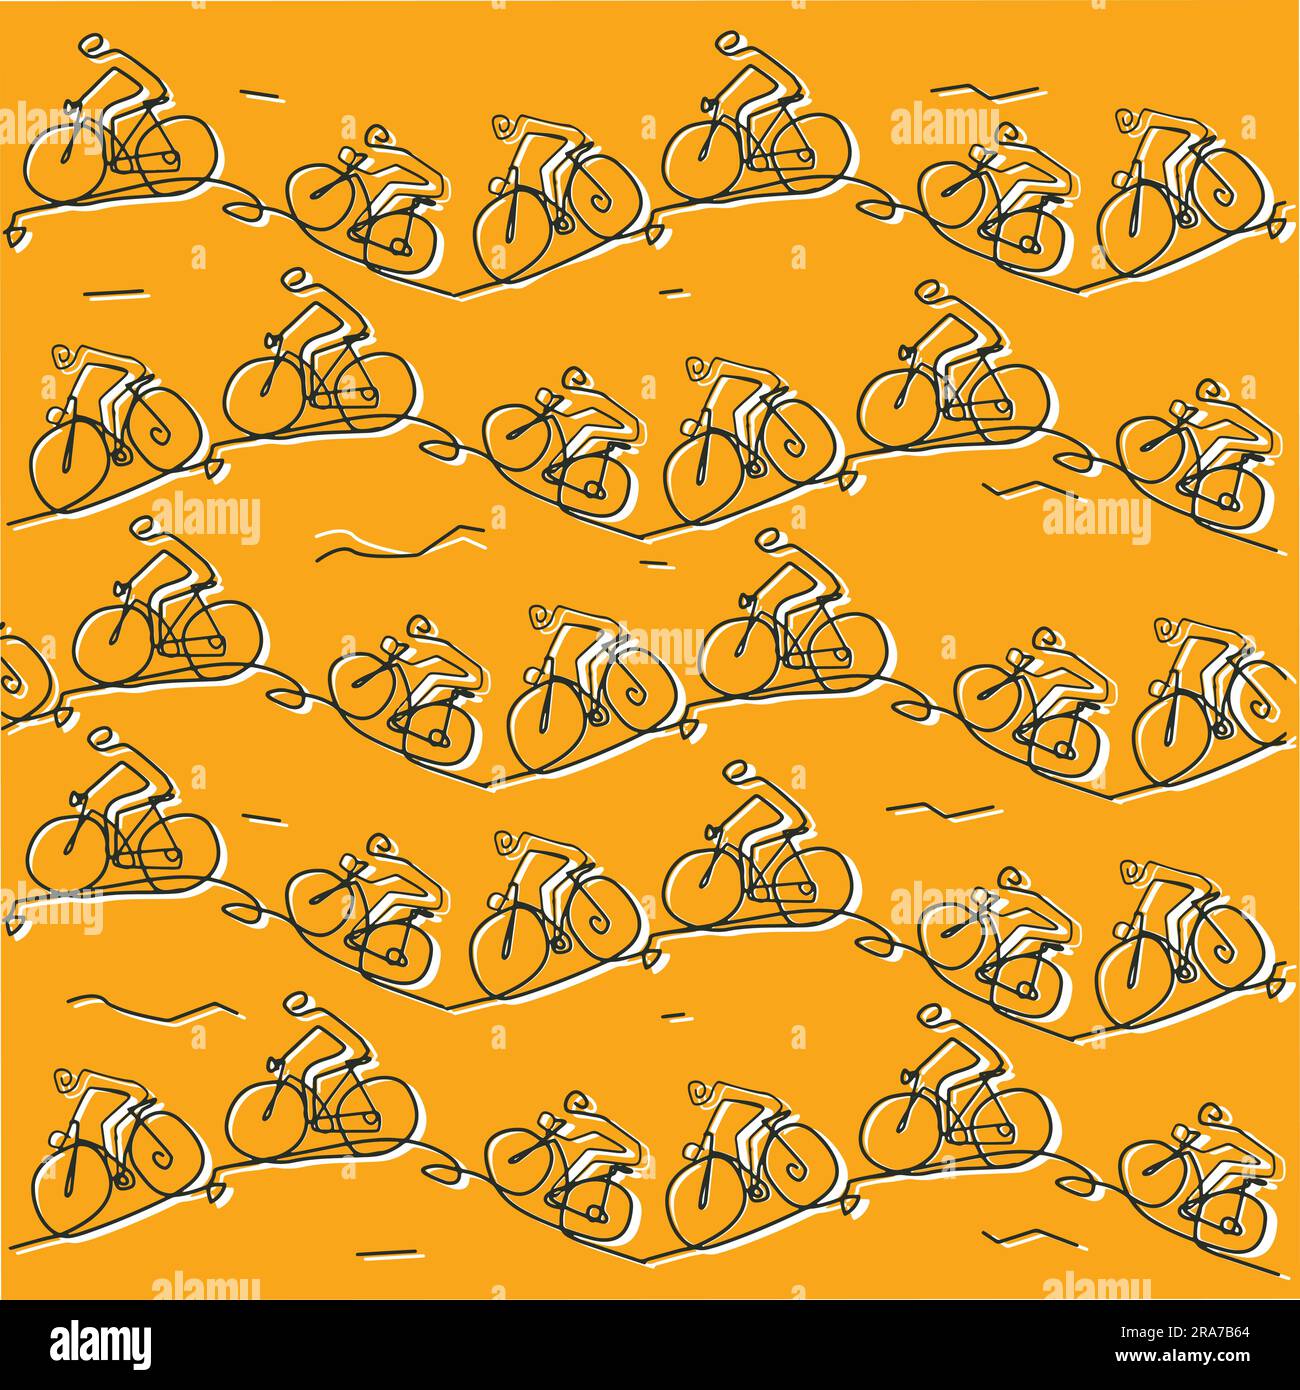 Motards de montagne, art de ligne stylisé, drôle décor fond. Illustration des cyclistes de VTT qui voyagent sur un terrain vallonné, sur fond orange. Illustration de Vecteur